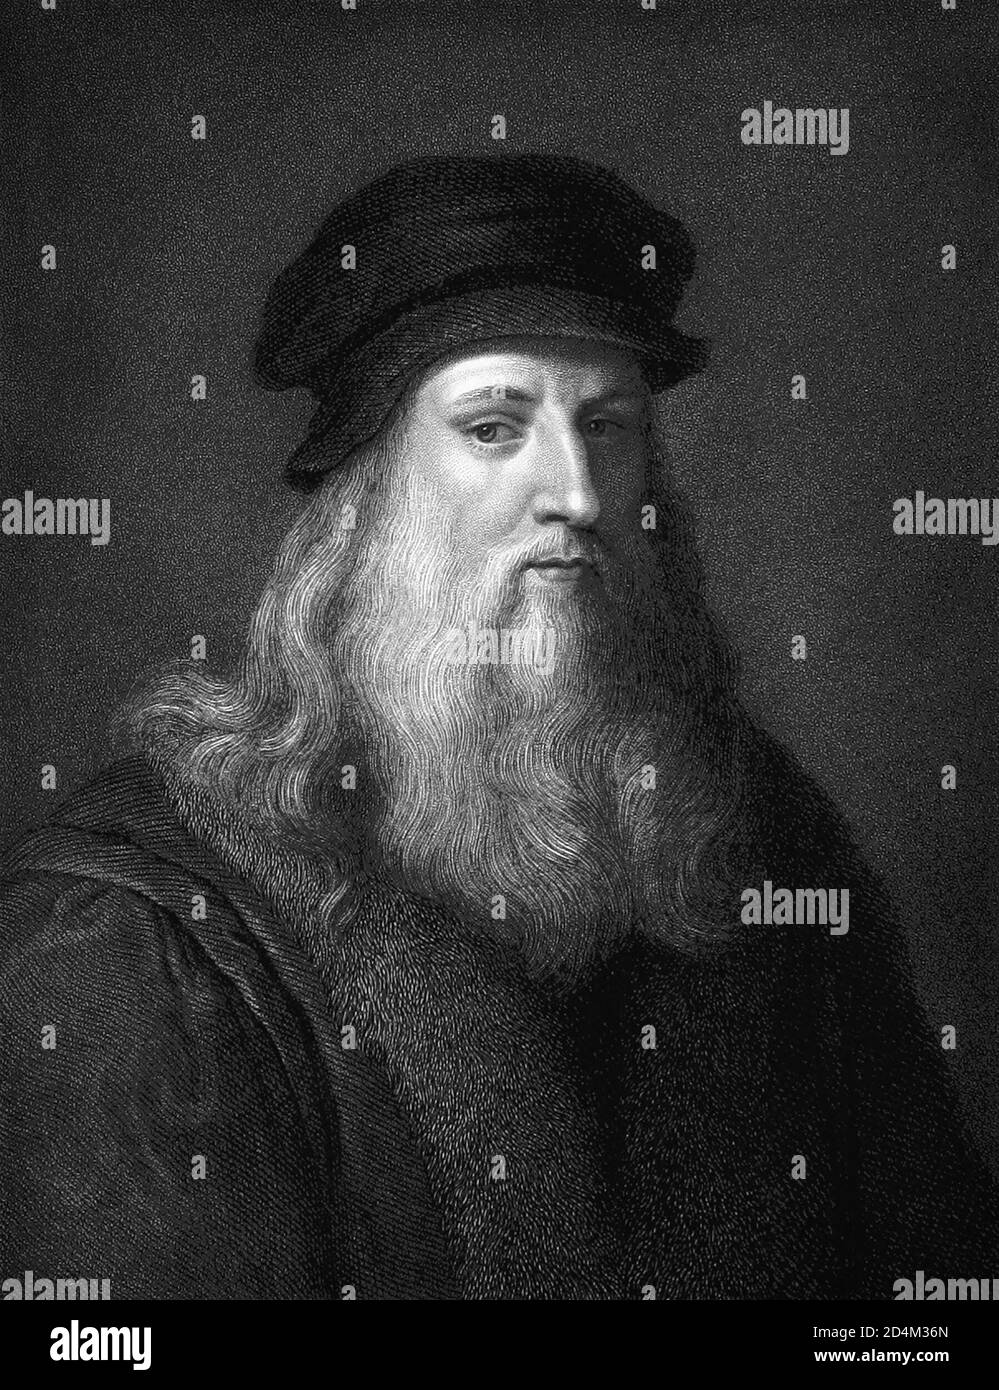 Leonardo da Vinci (1452-1519), la polematera italiana del Alto Renacimiento, es ampliamente considerado uno de los pintores más grandes de todos los tiempos. Foto de stock